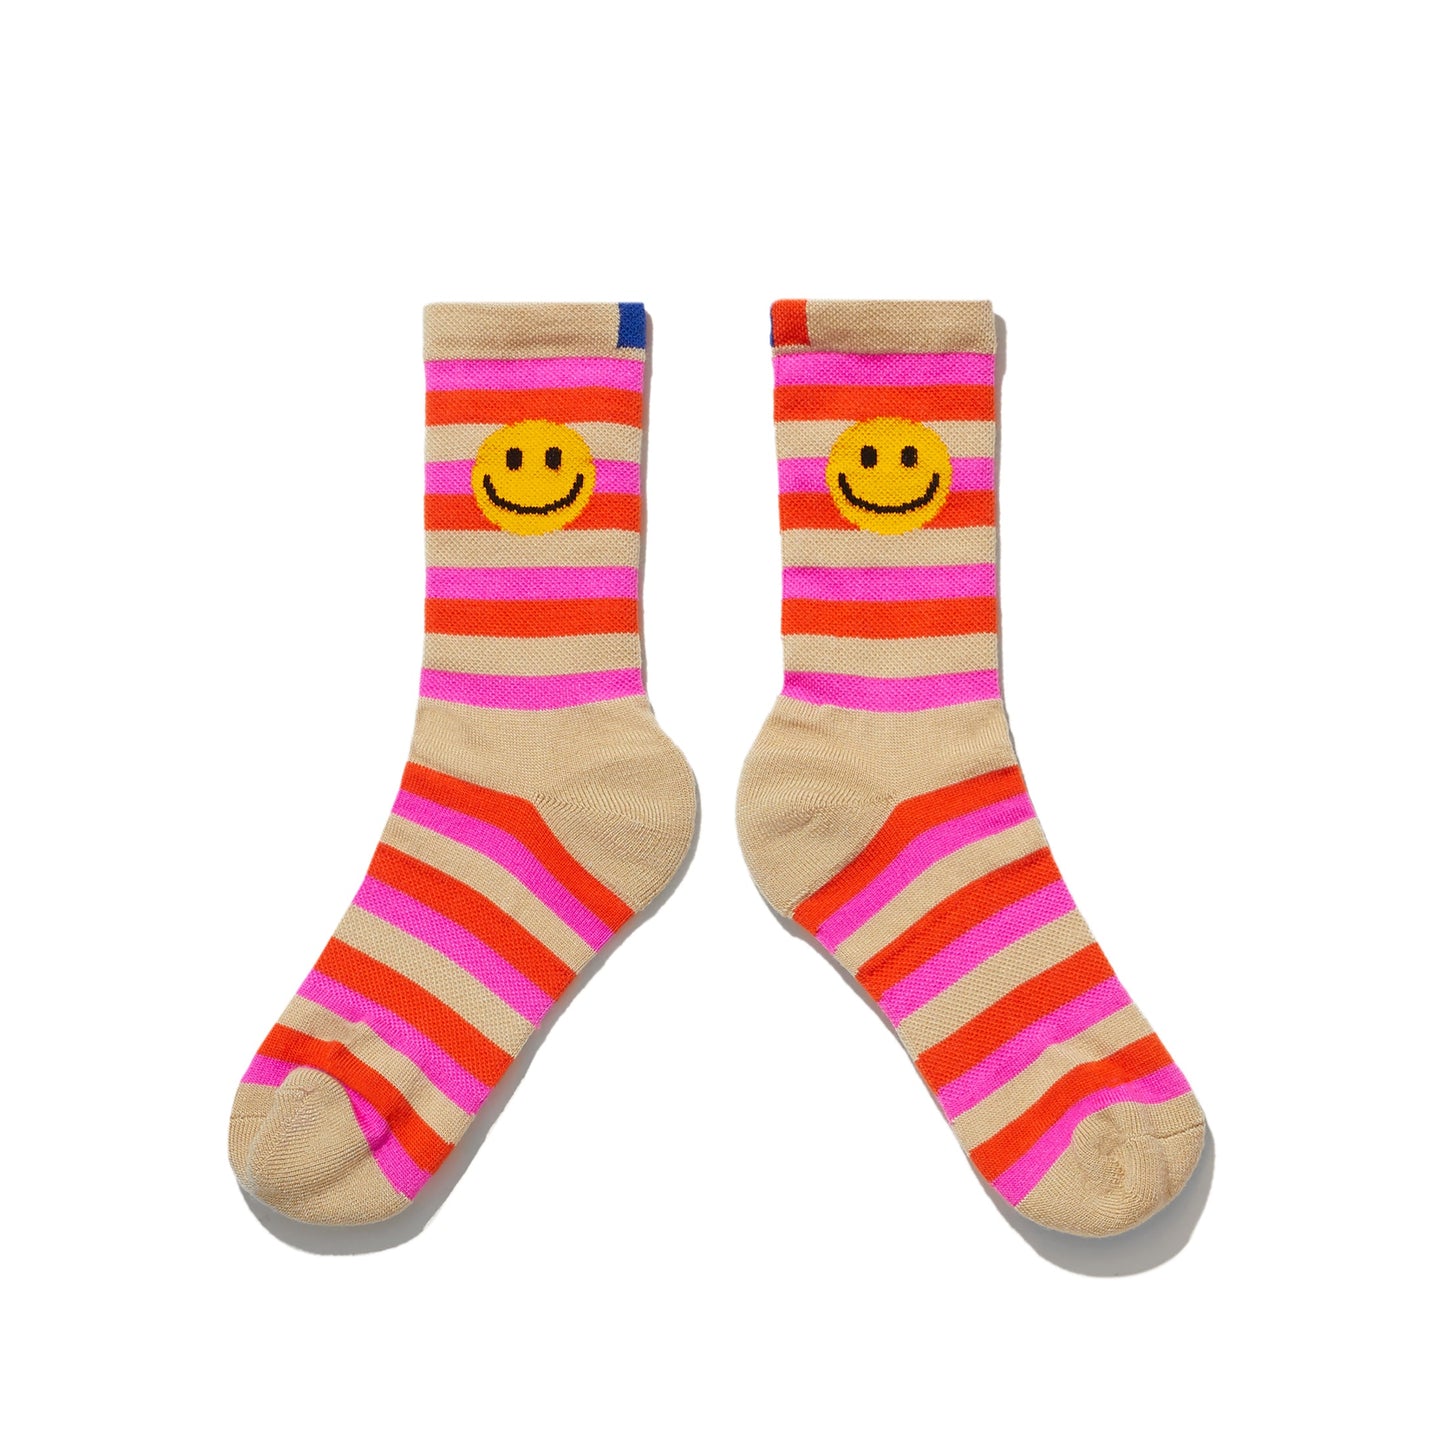 The Women's Smile Stripe Sock - Beige/Pink/Poppy